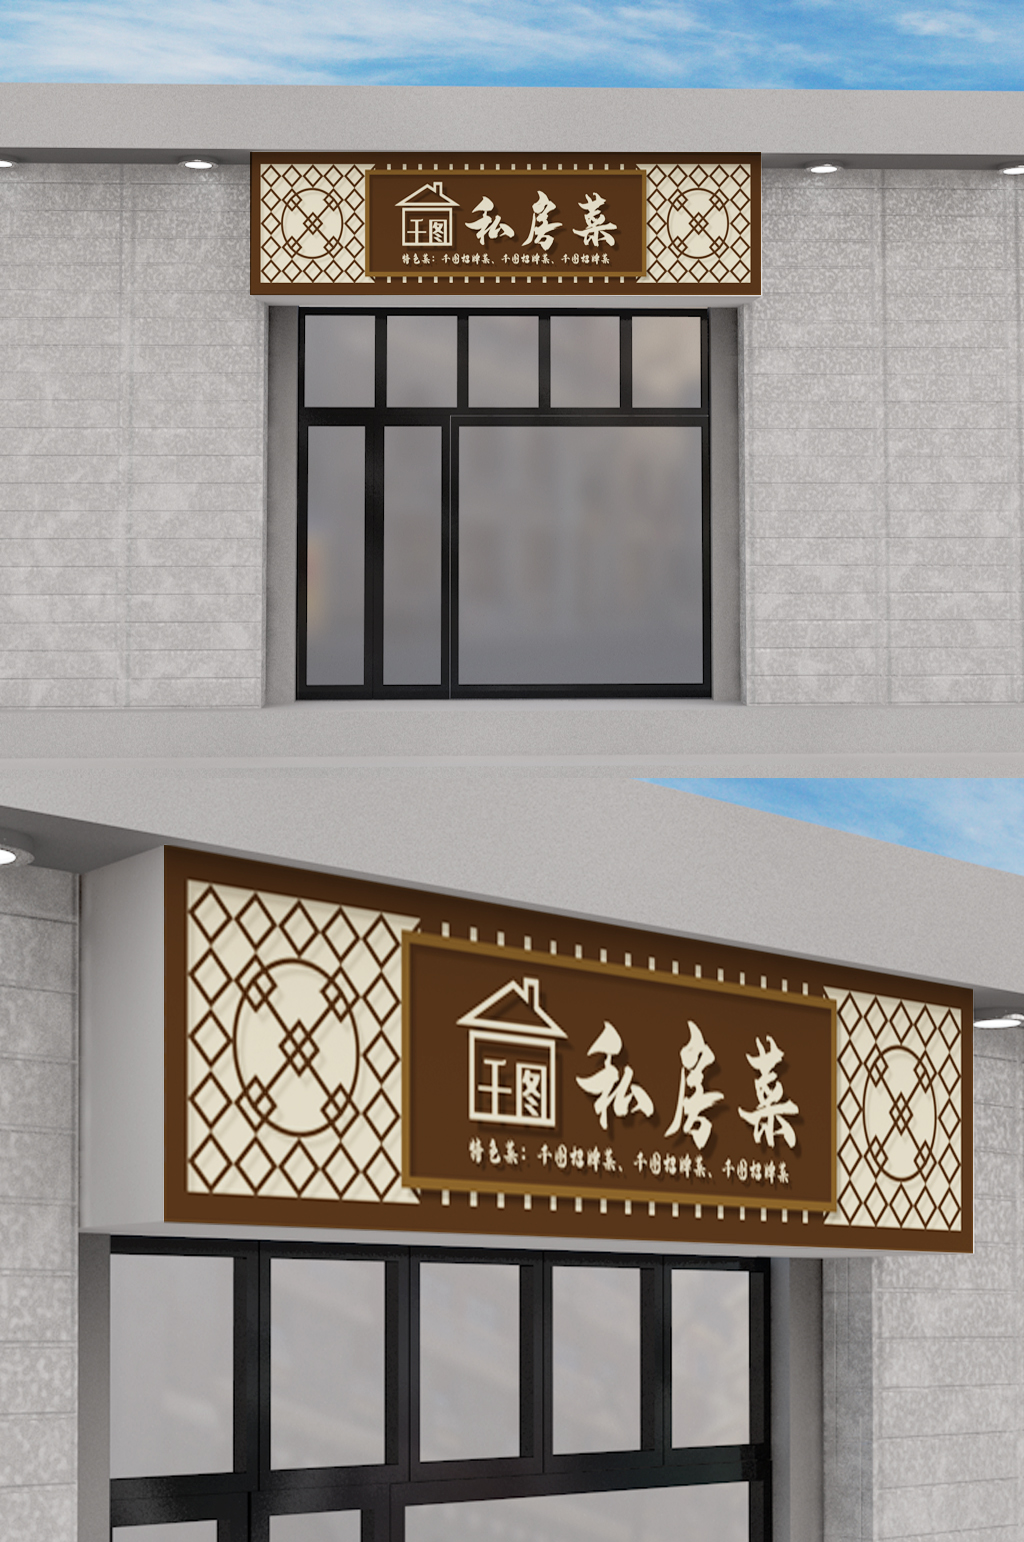 私房菜馆门头设计立即下载饭店创意原创门头模板设计更多格式:全部psd